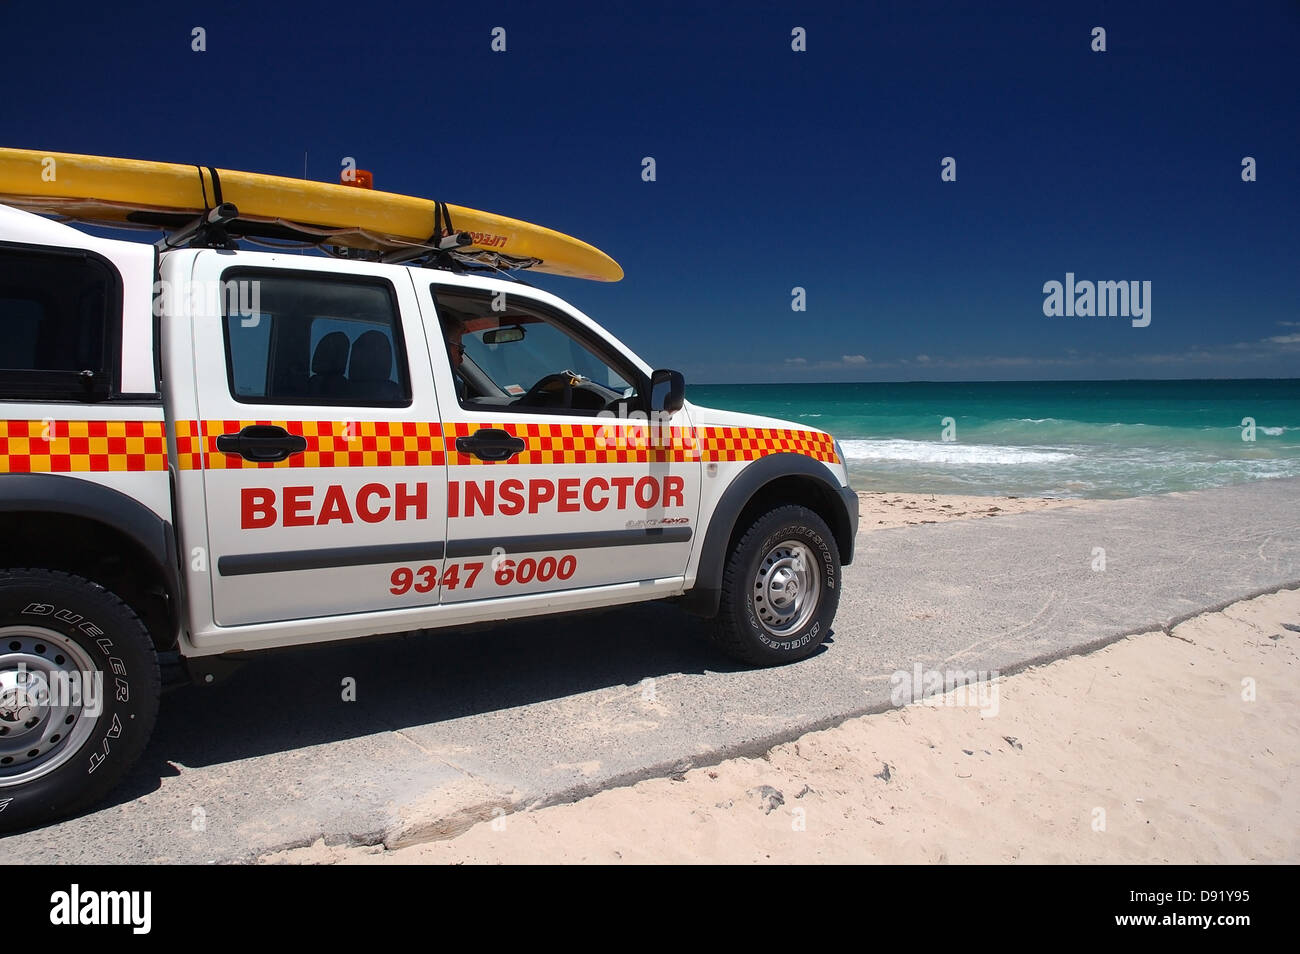 Beach inspector